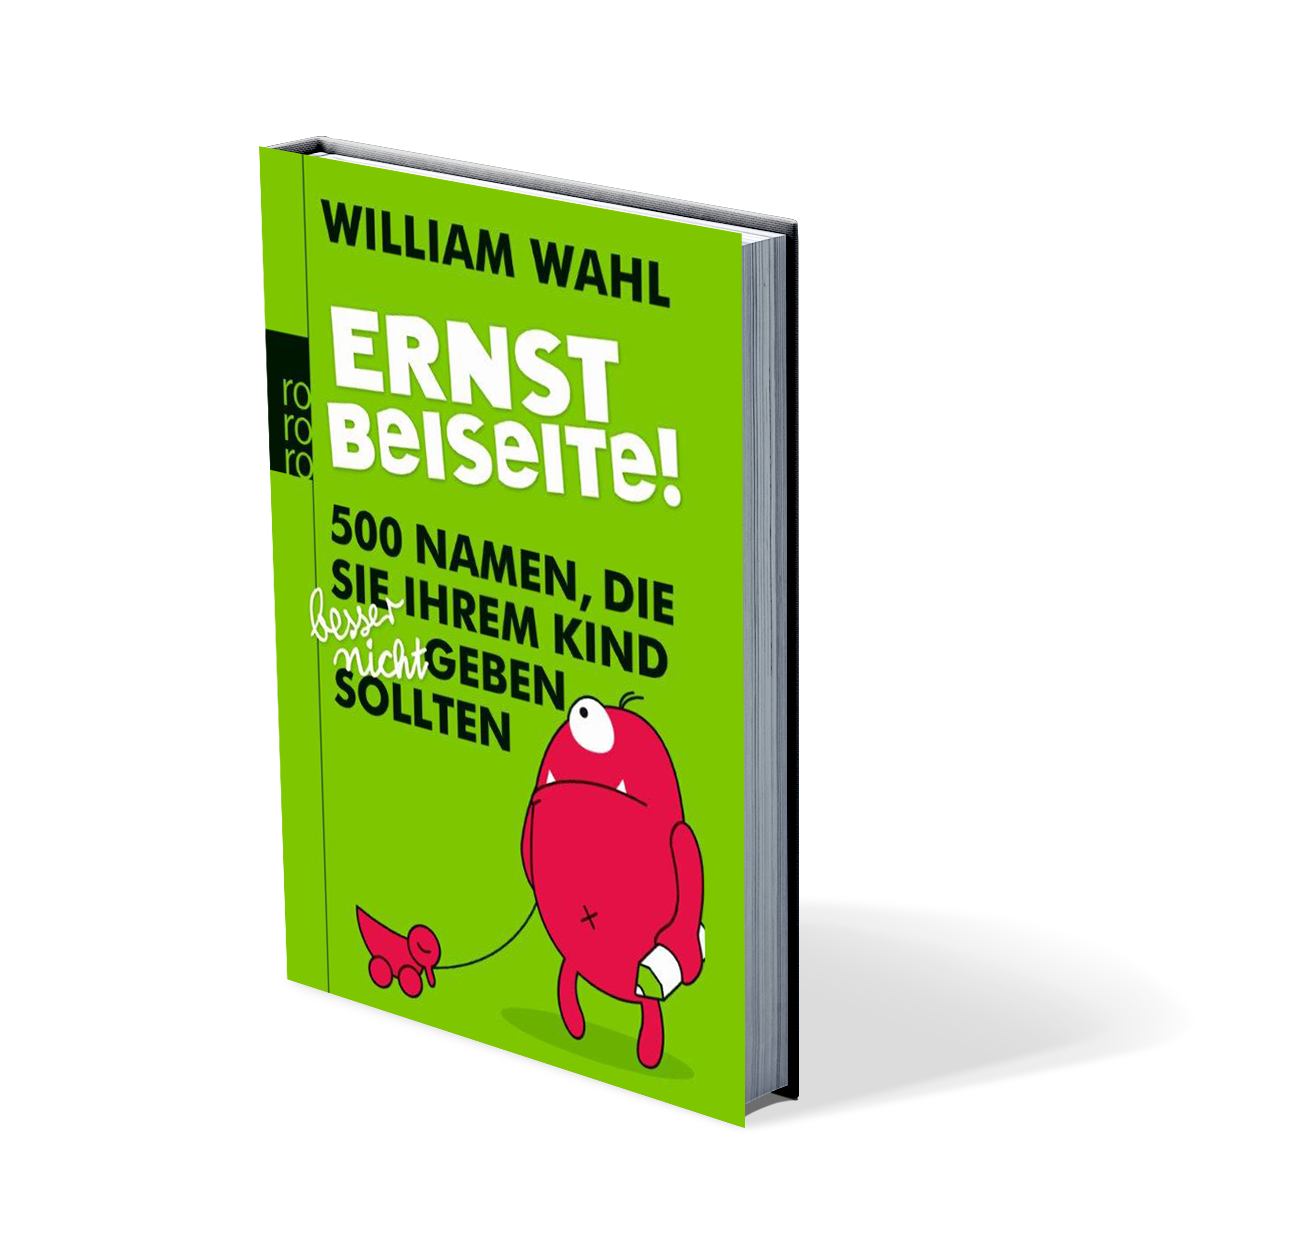 William Wahl - "Ernst beiseite"